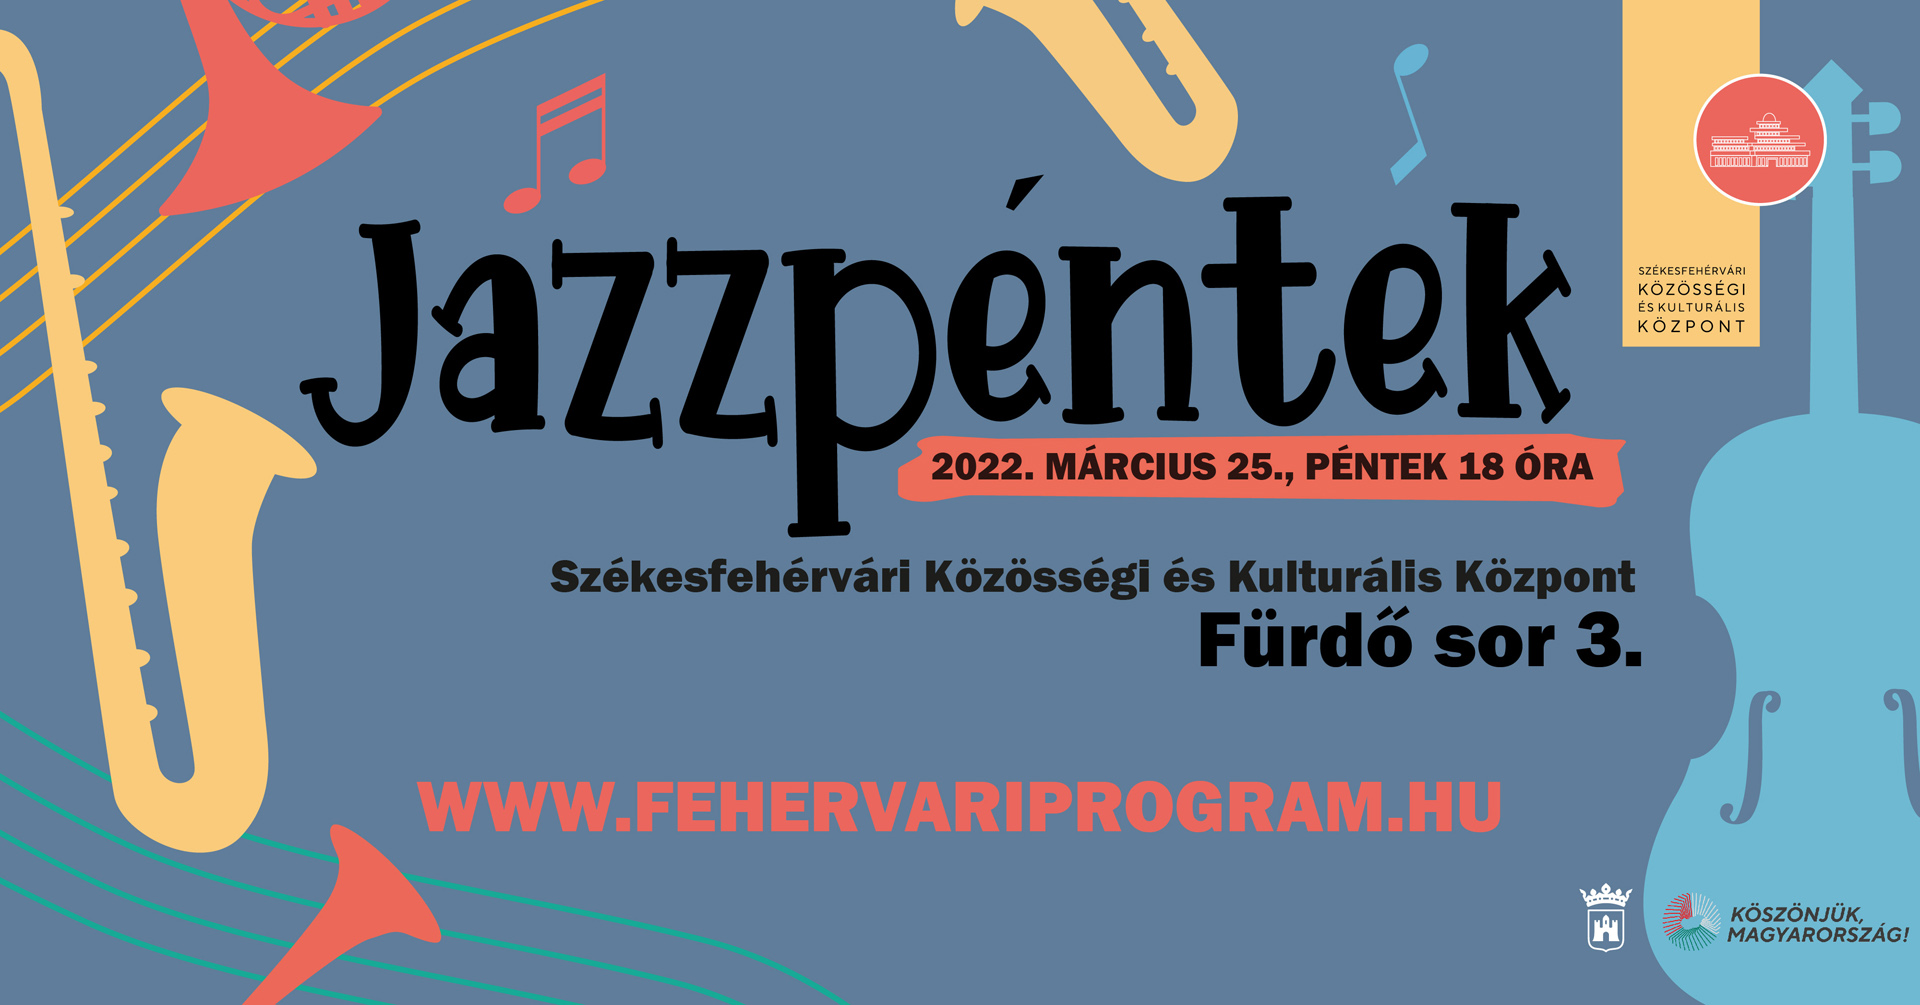 Folytatódnak a Jazzpéntekek a Fürdő soron - az Elek István Quartet lép fel